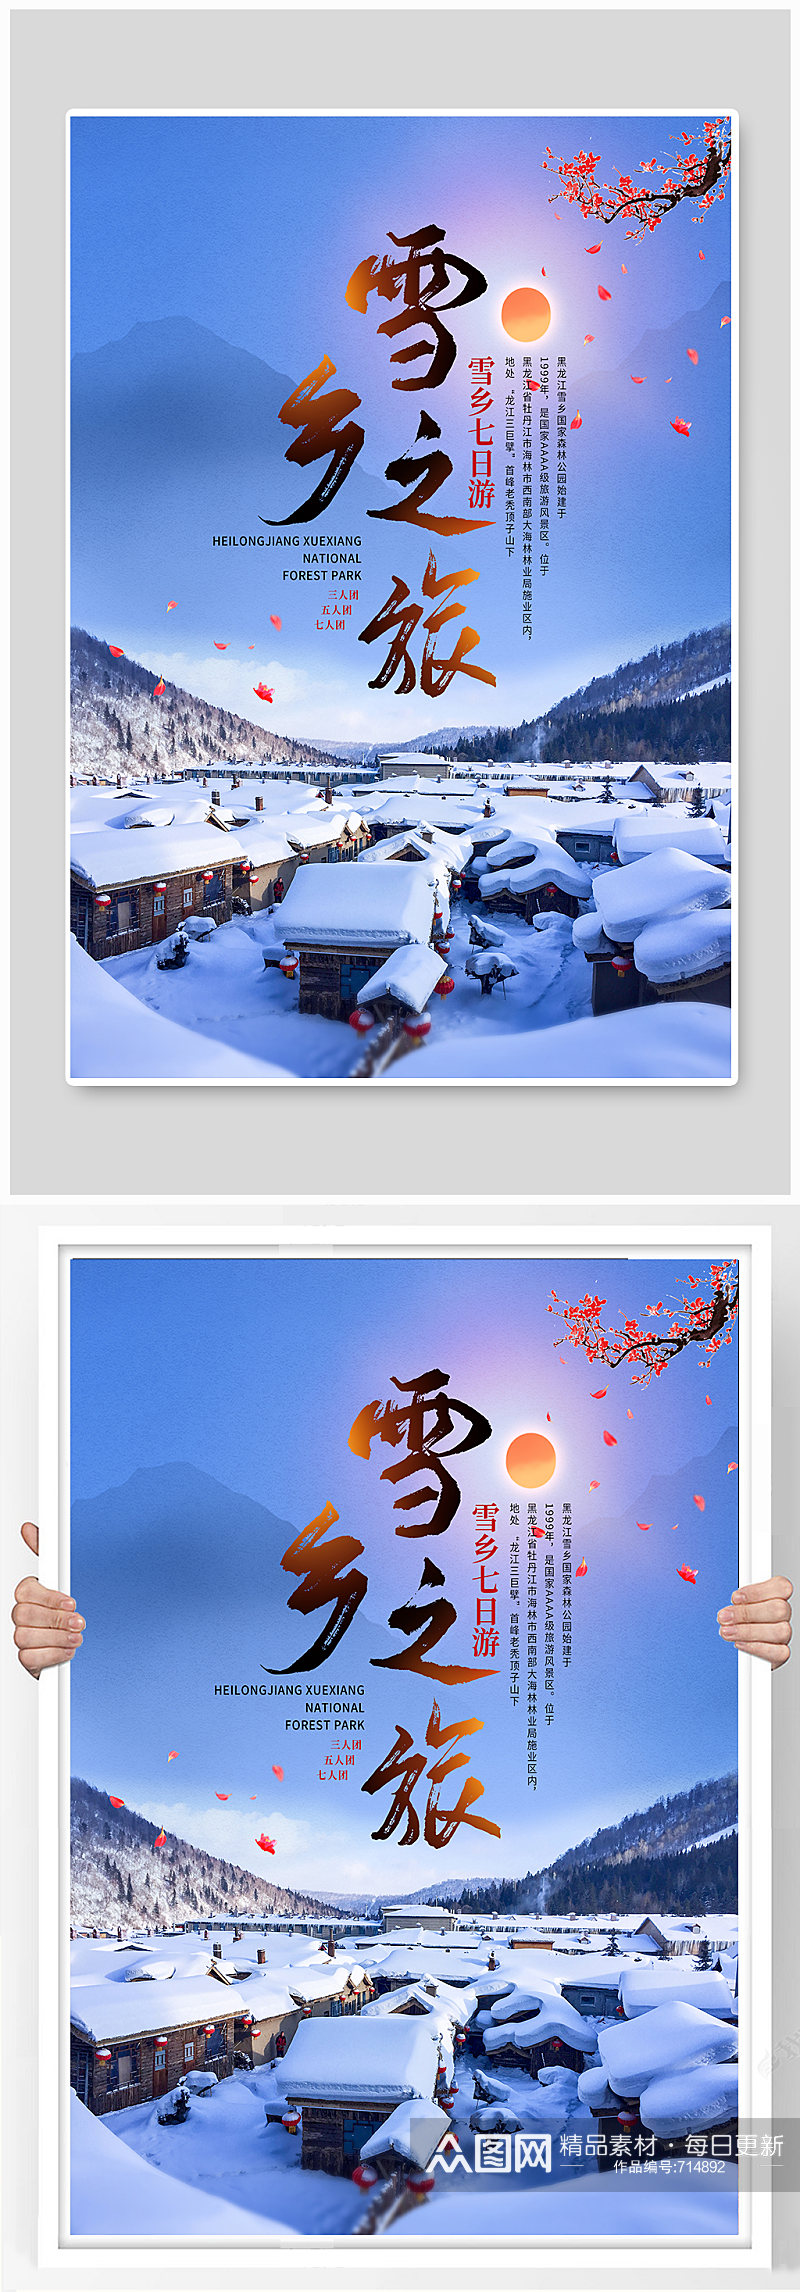 中国风雪乡旅游宣传海报素材